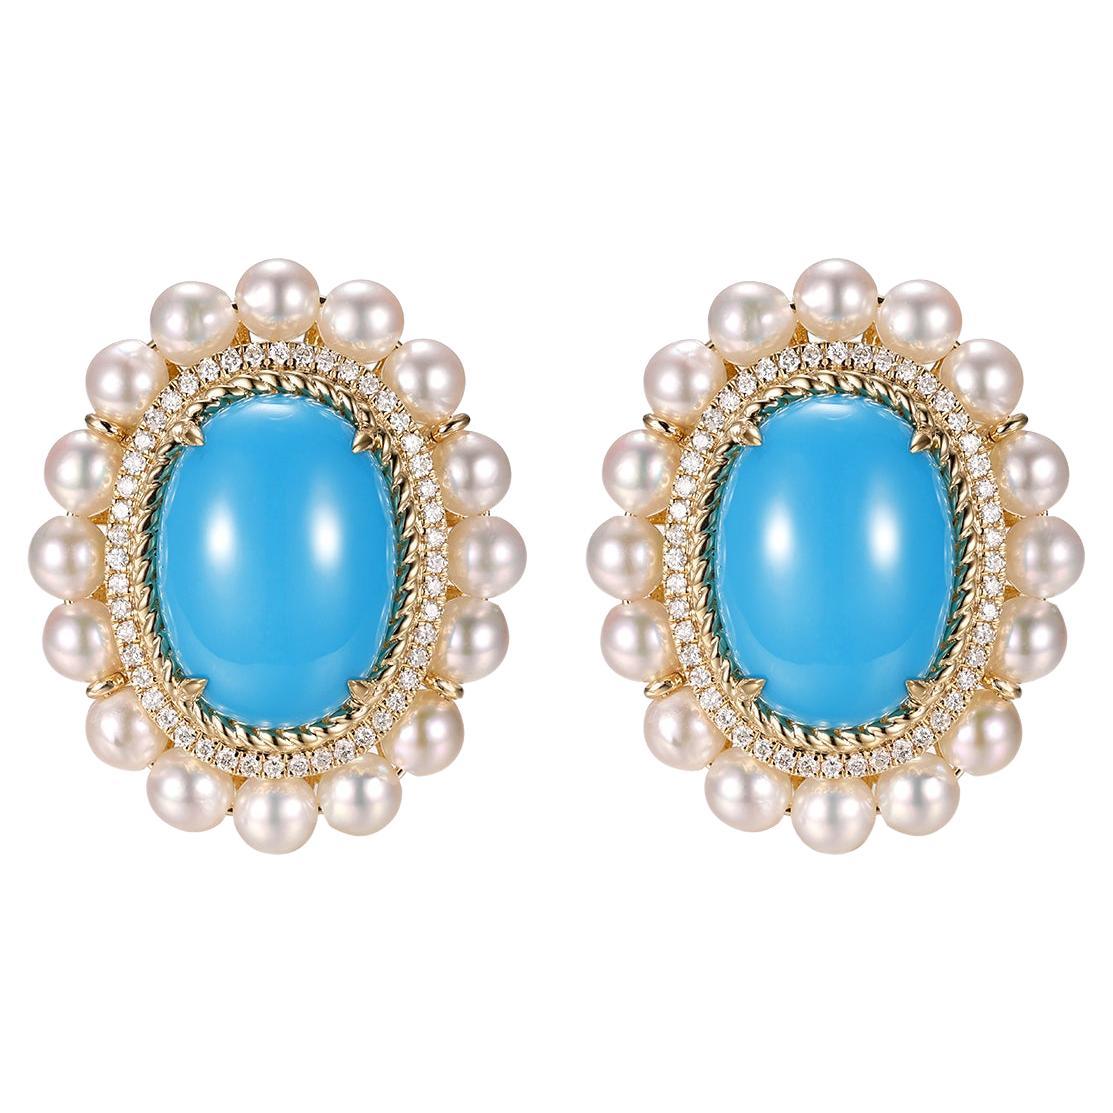 Boucles d'oreilles en or jaune 14 carats avec turquoise, perles et diamants